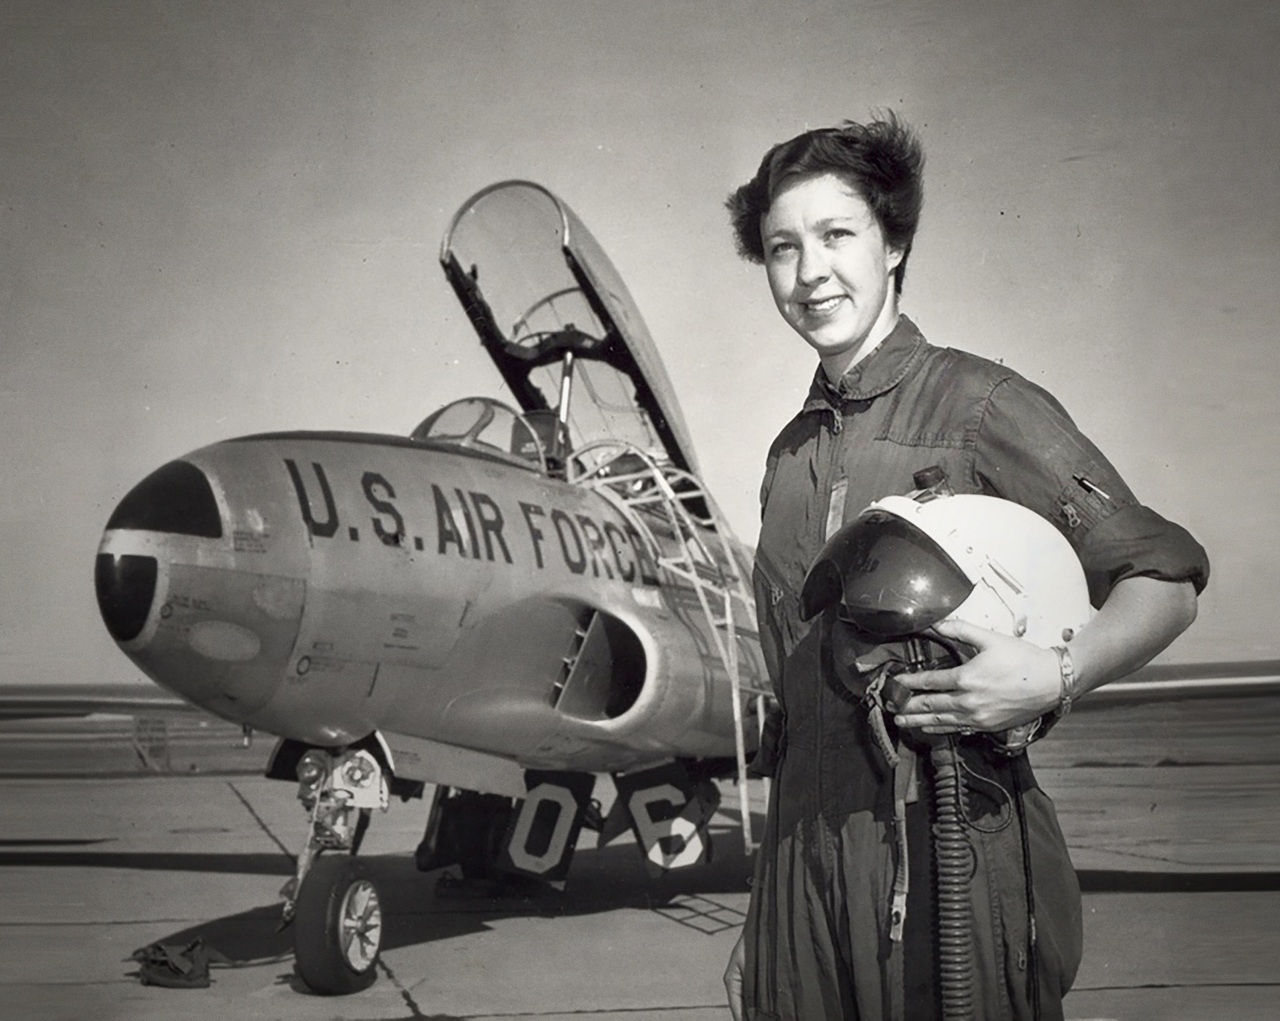 Уолли Фанк была первой женщиной-инструктором на военной базе США.